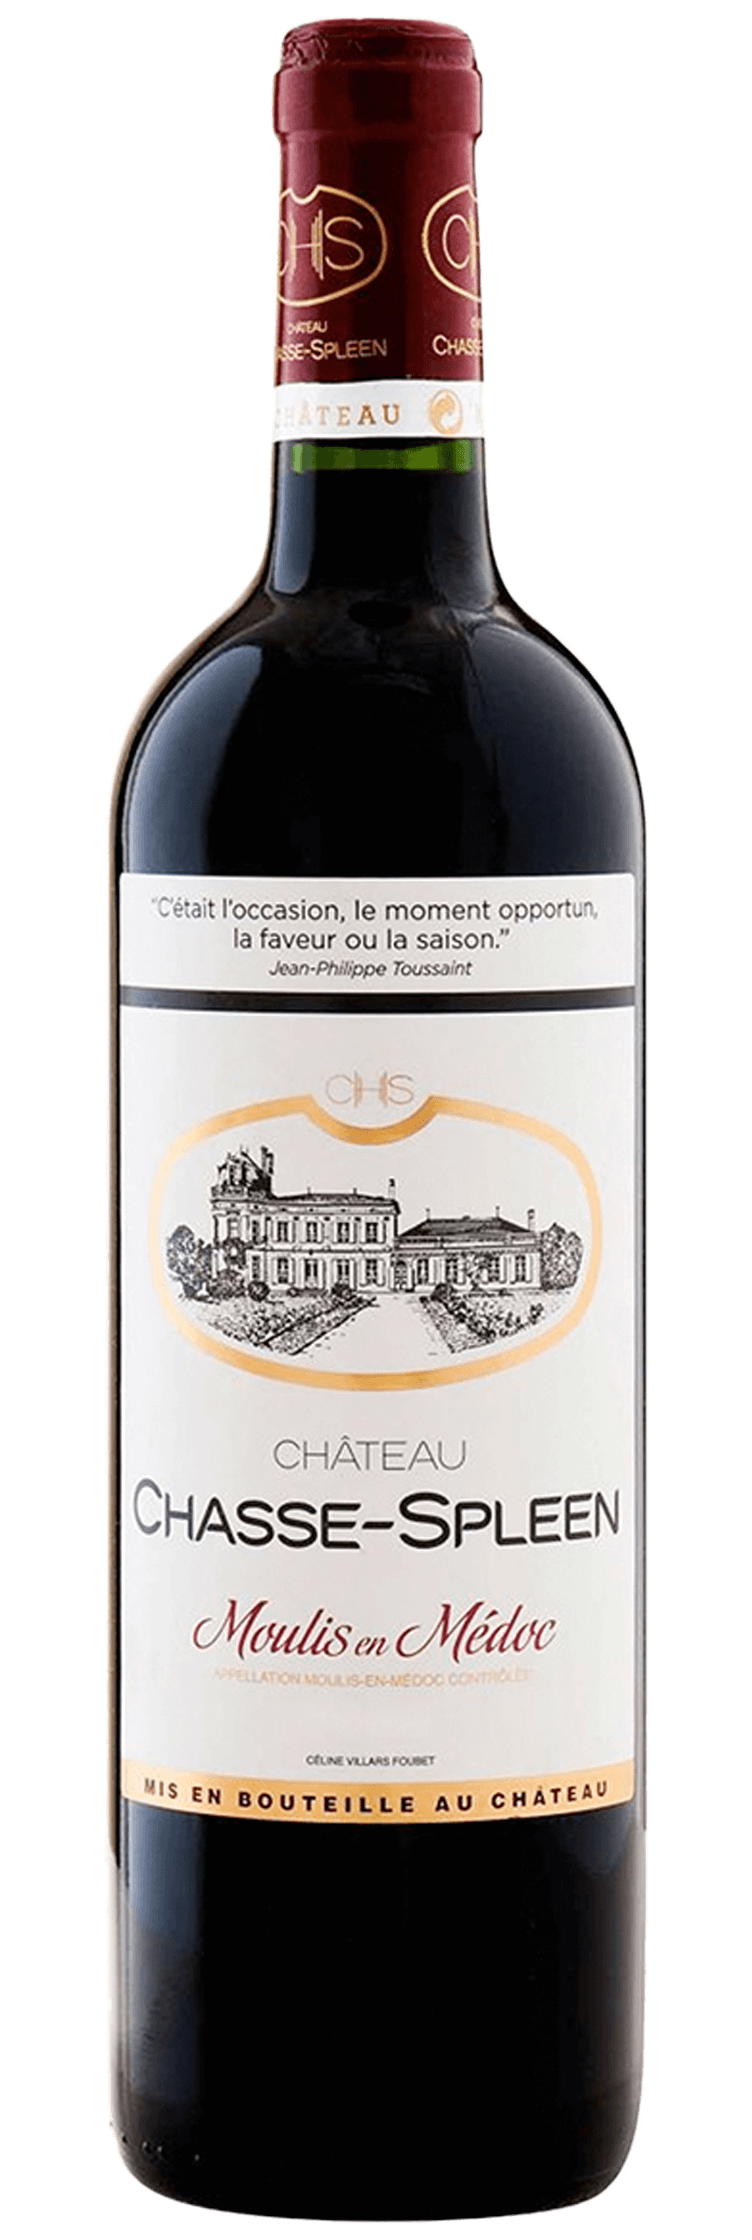 Château Chasse-Spleen 2017 Cru Bourgeois Exceptionnel, Moulis-en-Médoc